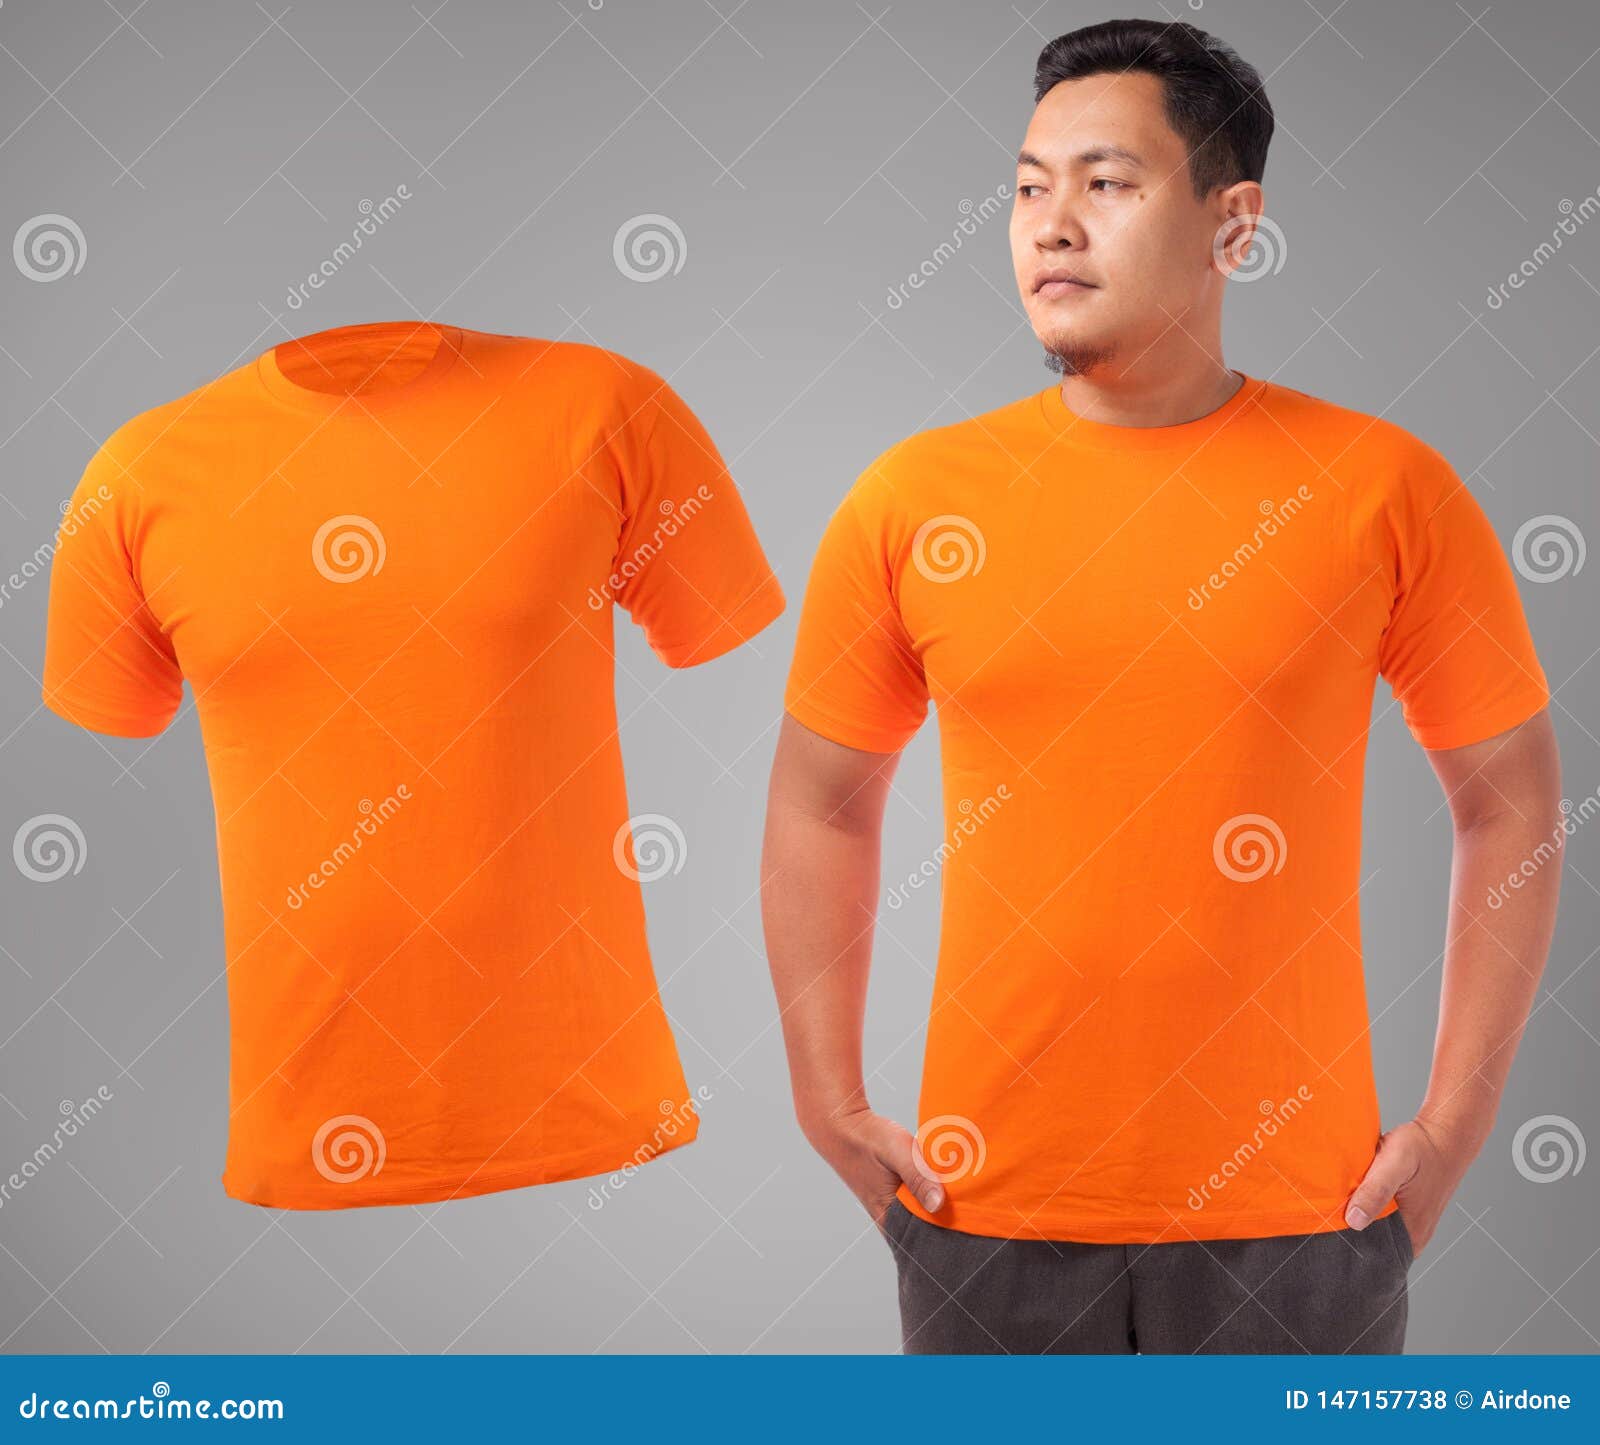 Orange shirt fashion